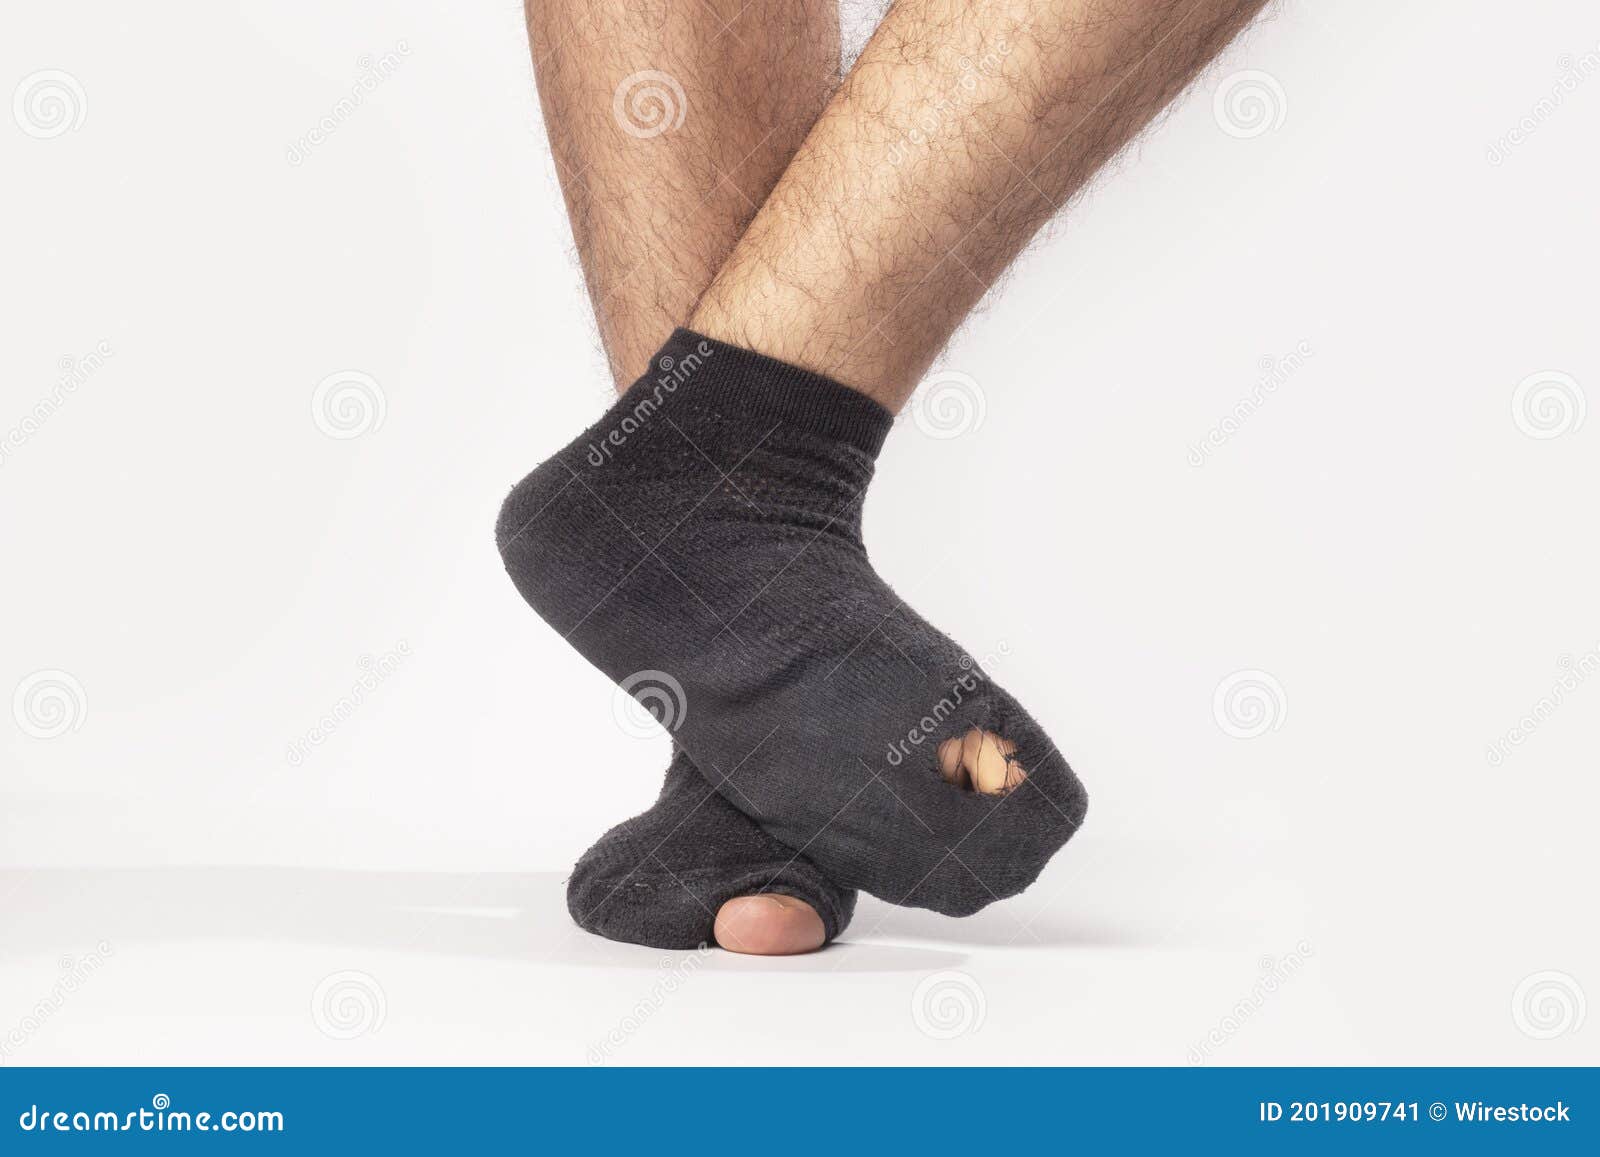 https://thumbs.dreamstime.com/z/el-primero-de-los-pies-un-hombre-que-lleva-calcetines-negros-con-agujeros-aislados-en-fondo-gris-201909741.jpg